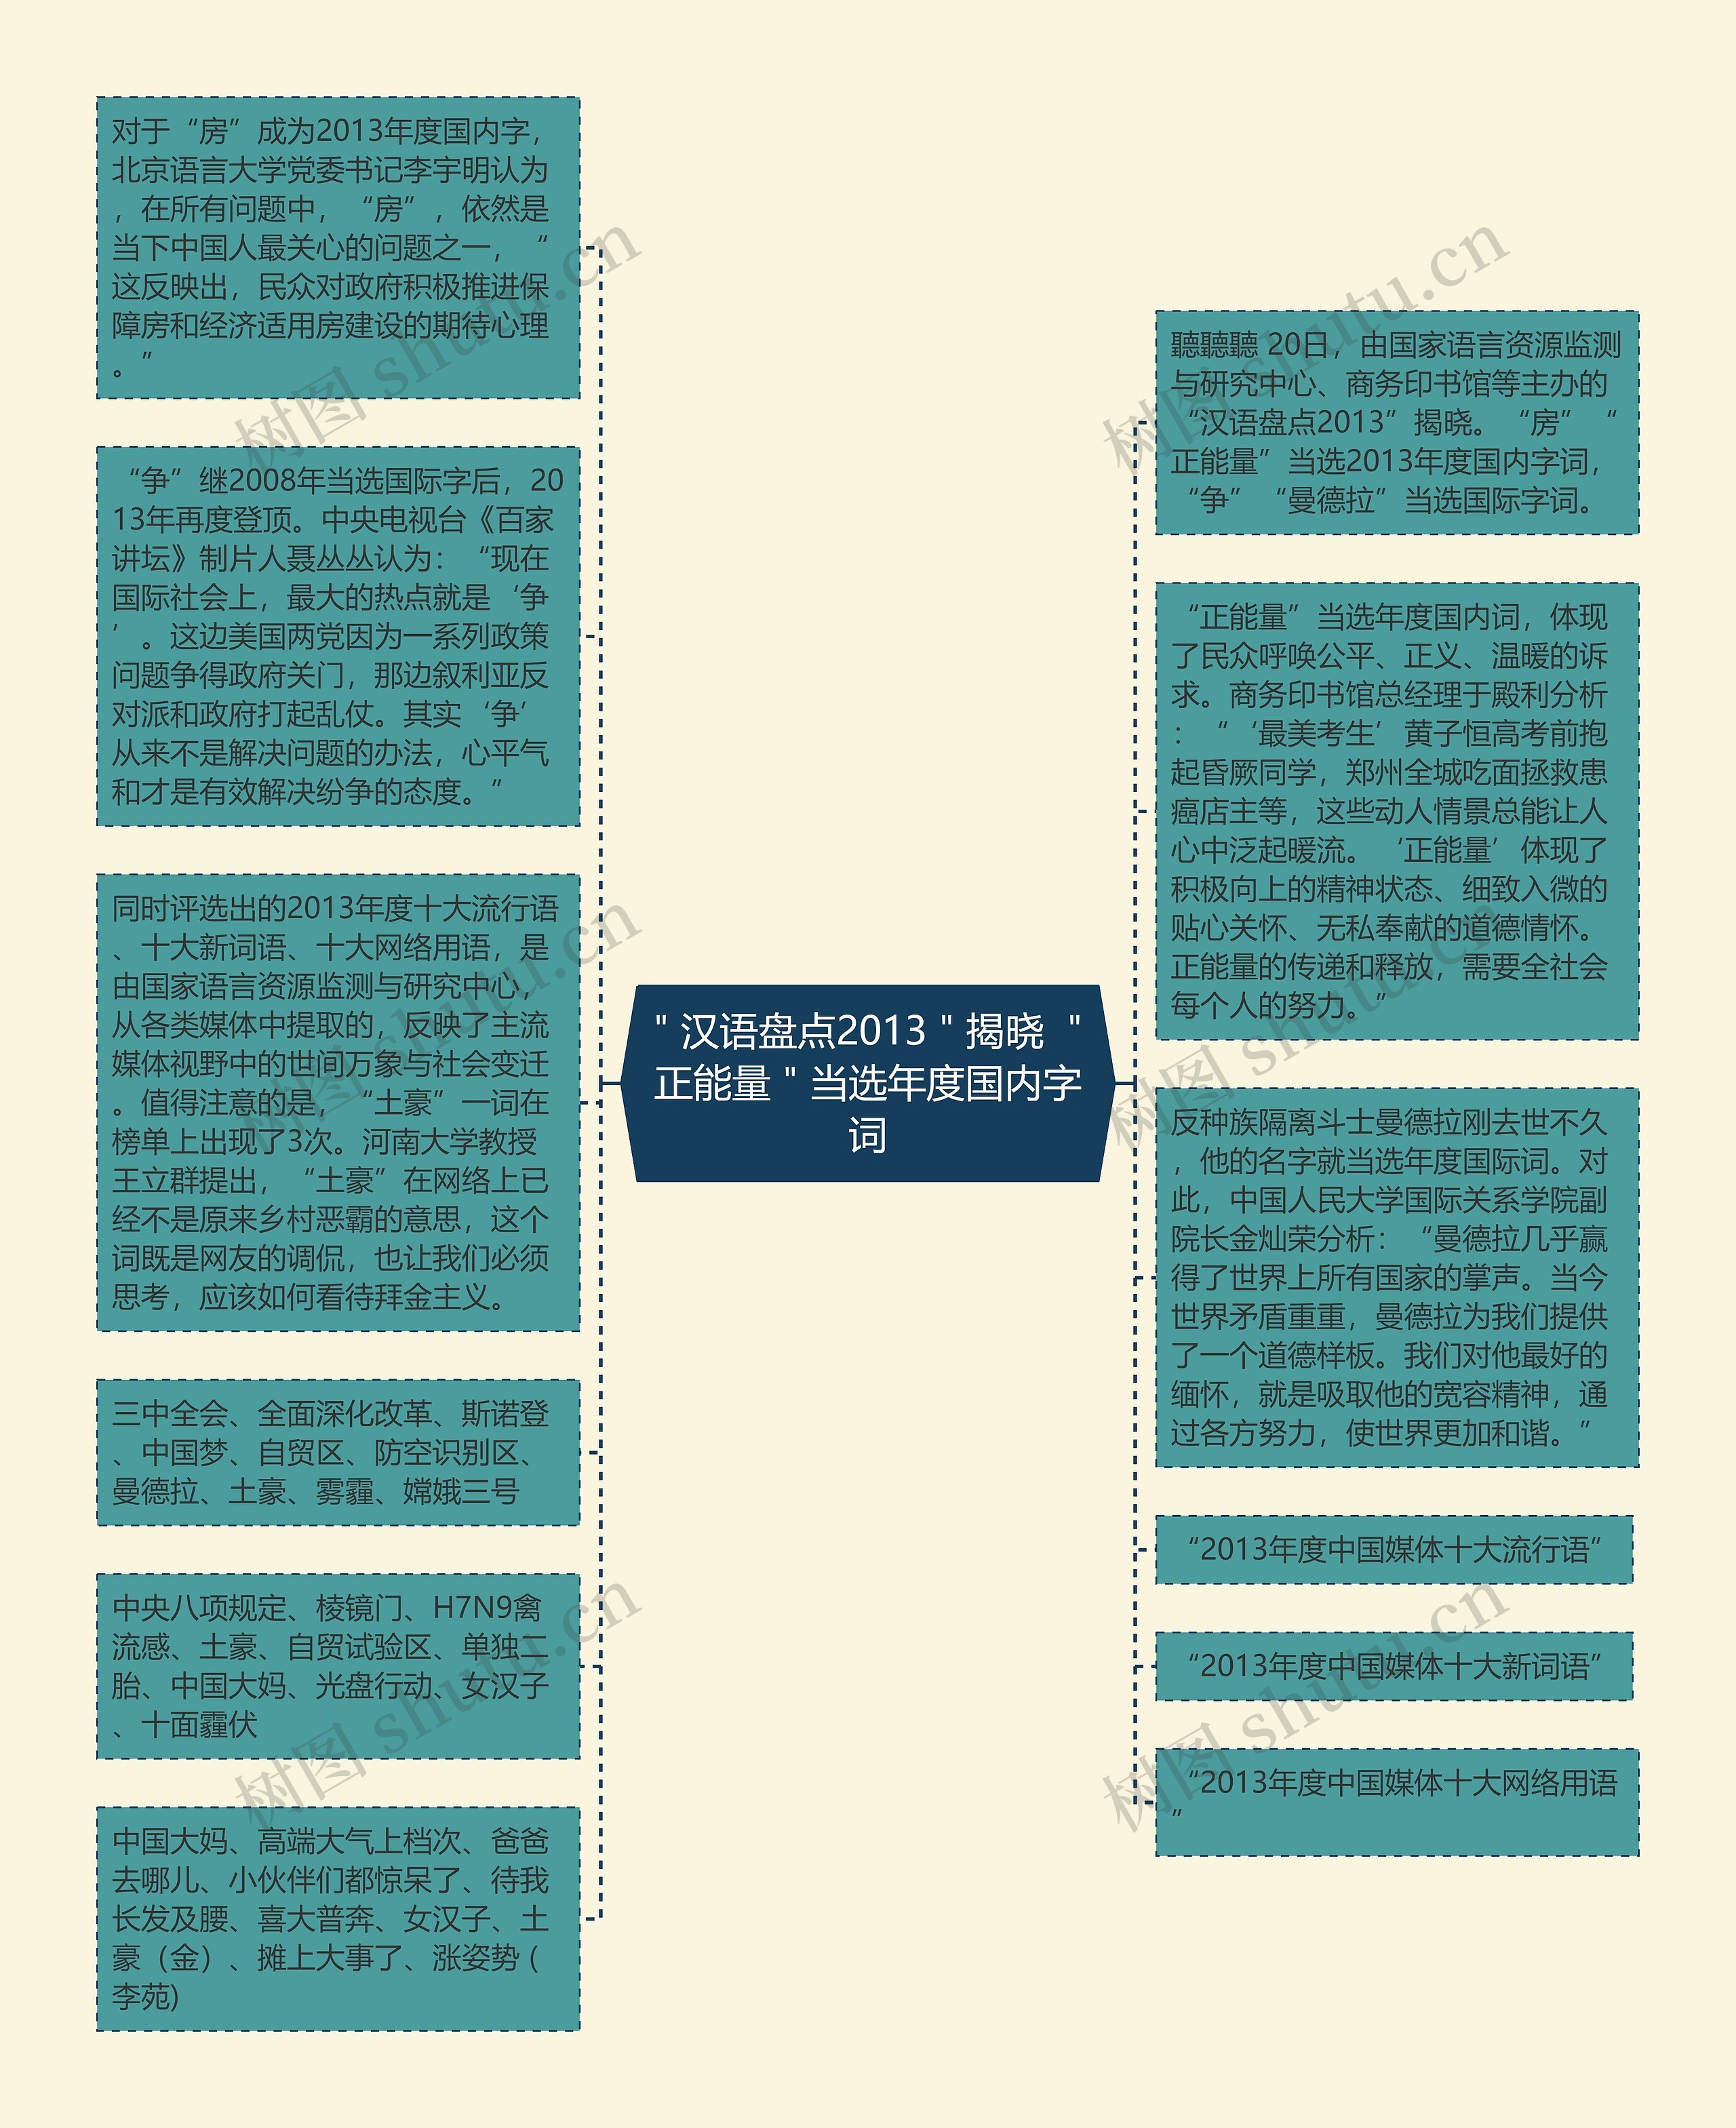 ＂汉语盘点2013＂揭晓 ＂正能量＂当选年度国内字词思维导图